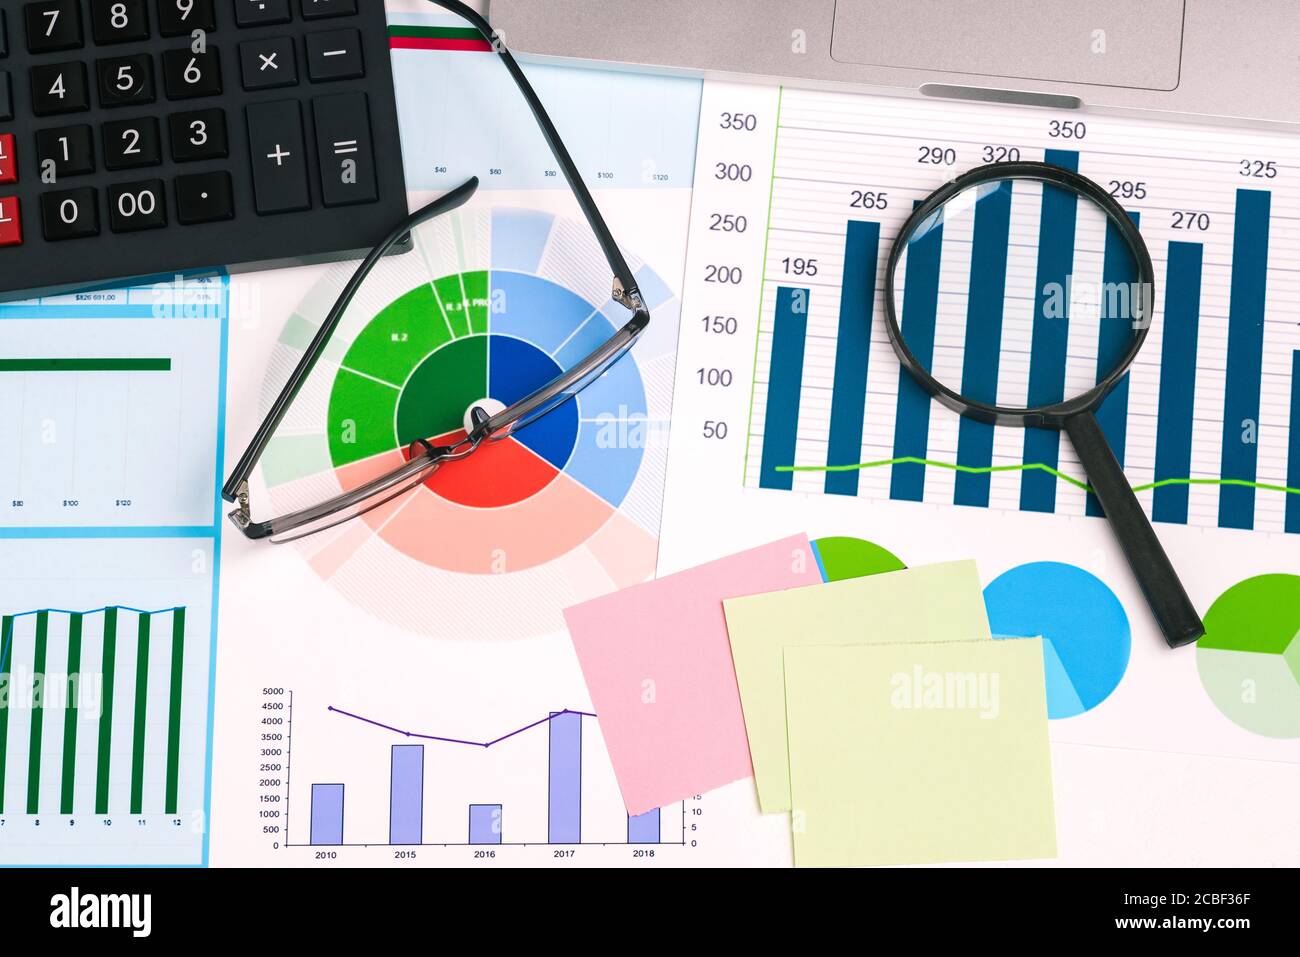 Lupe, Brille, Taschenrechner und Haftnotizen auf Ihrem Desktop. Statistische Diagramme mit Zahlen. Finanzdokumente mit kommerziellen Daten Stockfoto